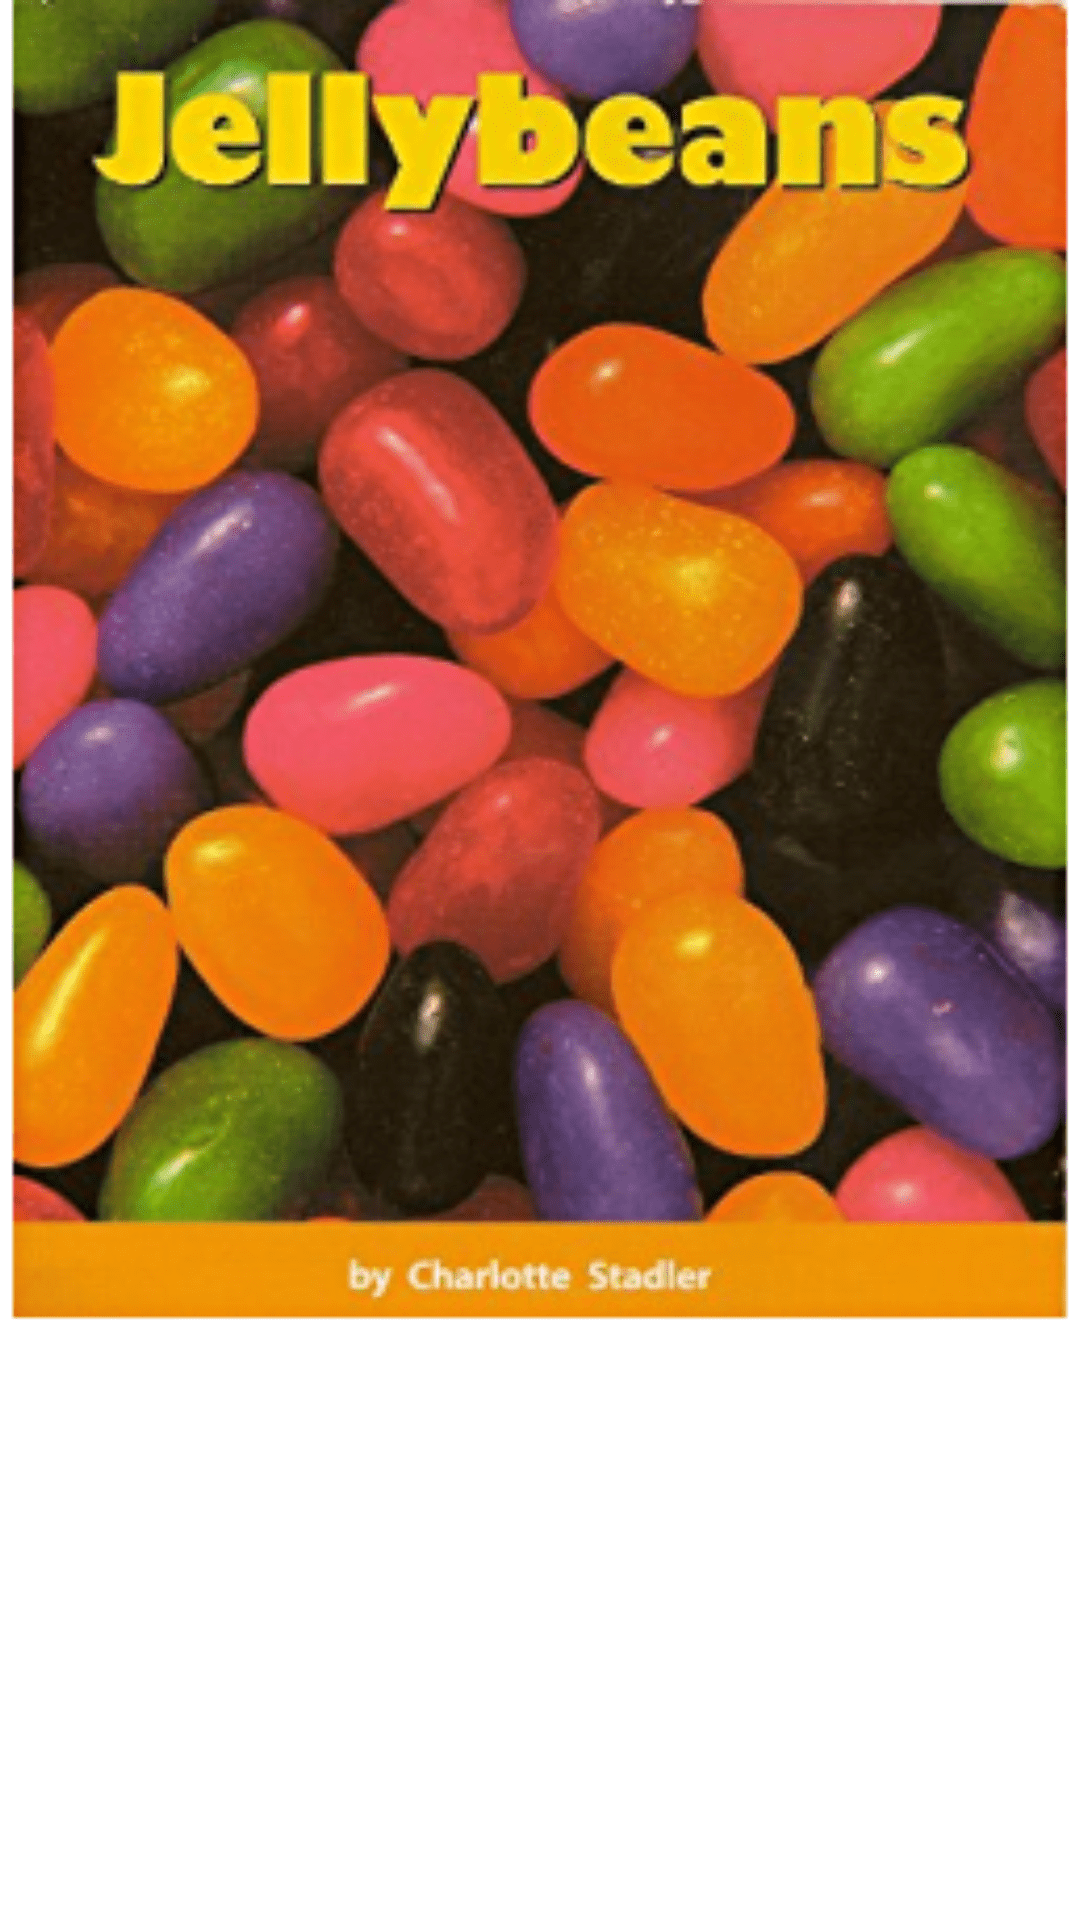 Jellybeans by Charlotte Stadler